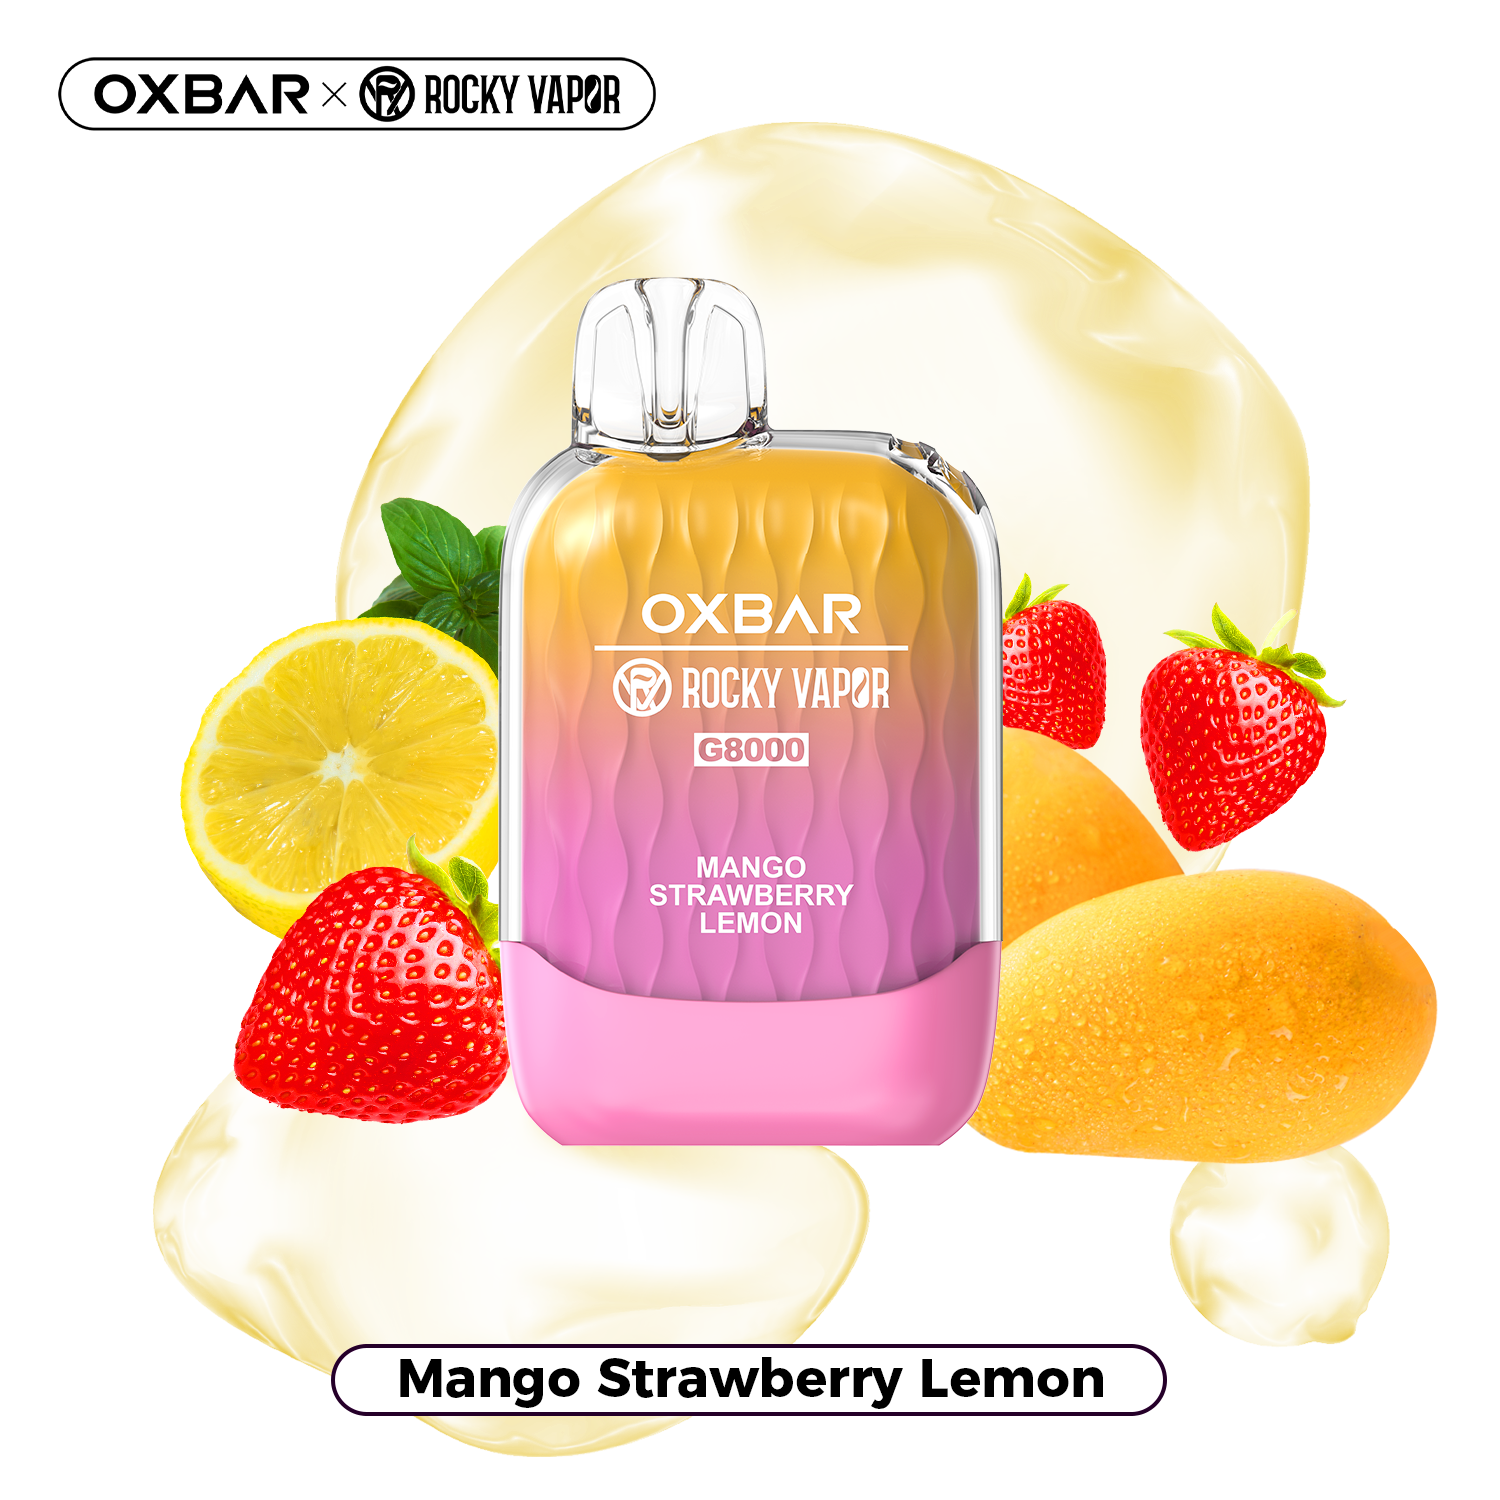 Mango Strawberry Lemon - OXBAR G8000 - 20mg - 5pc/box